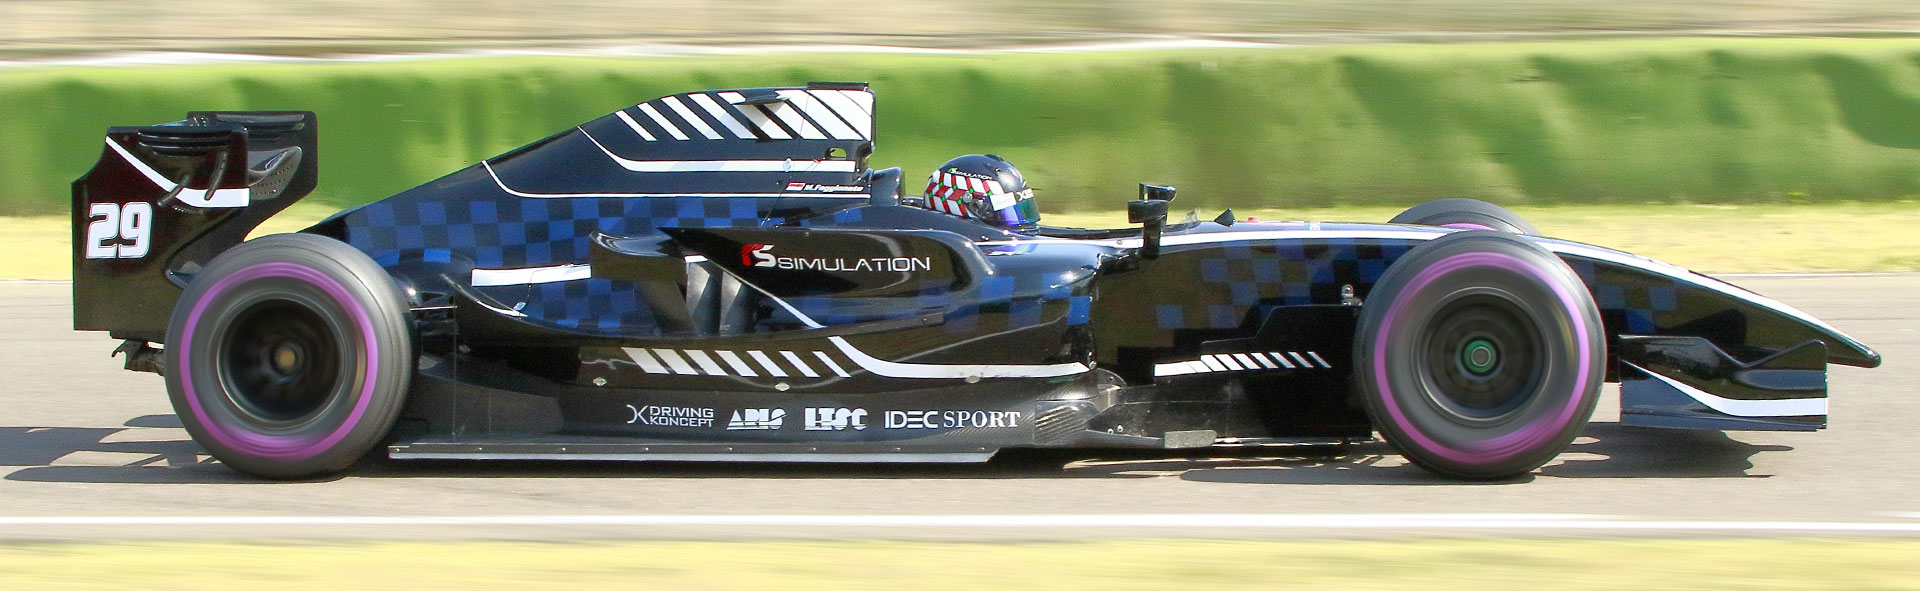 Dallara - GP2